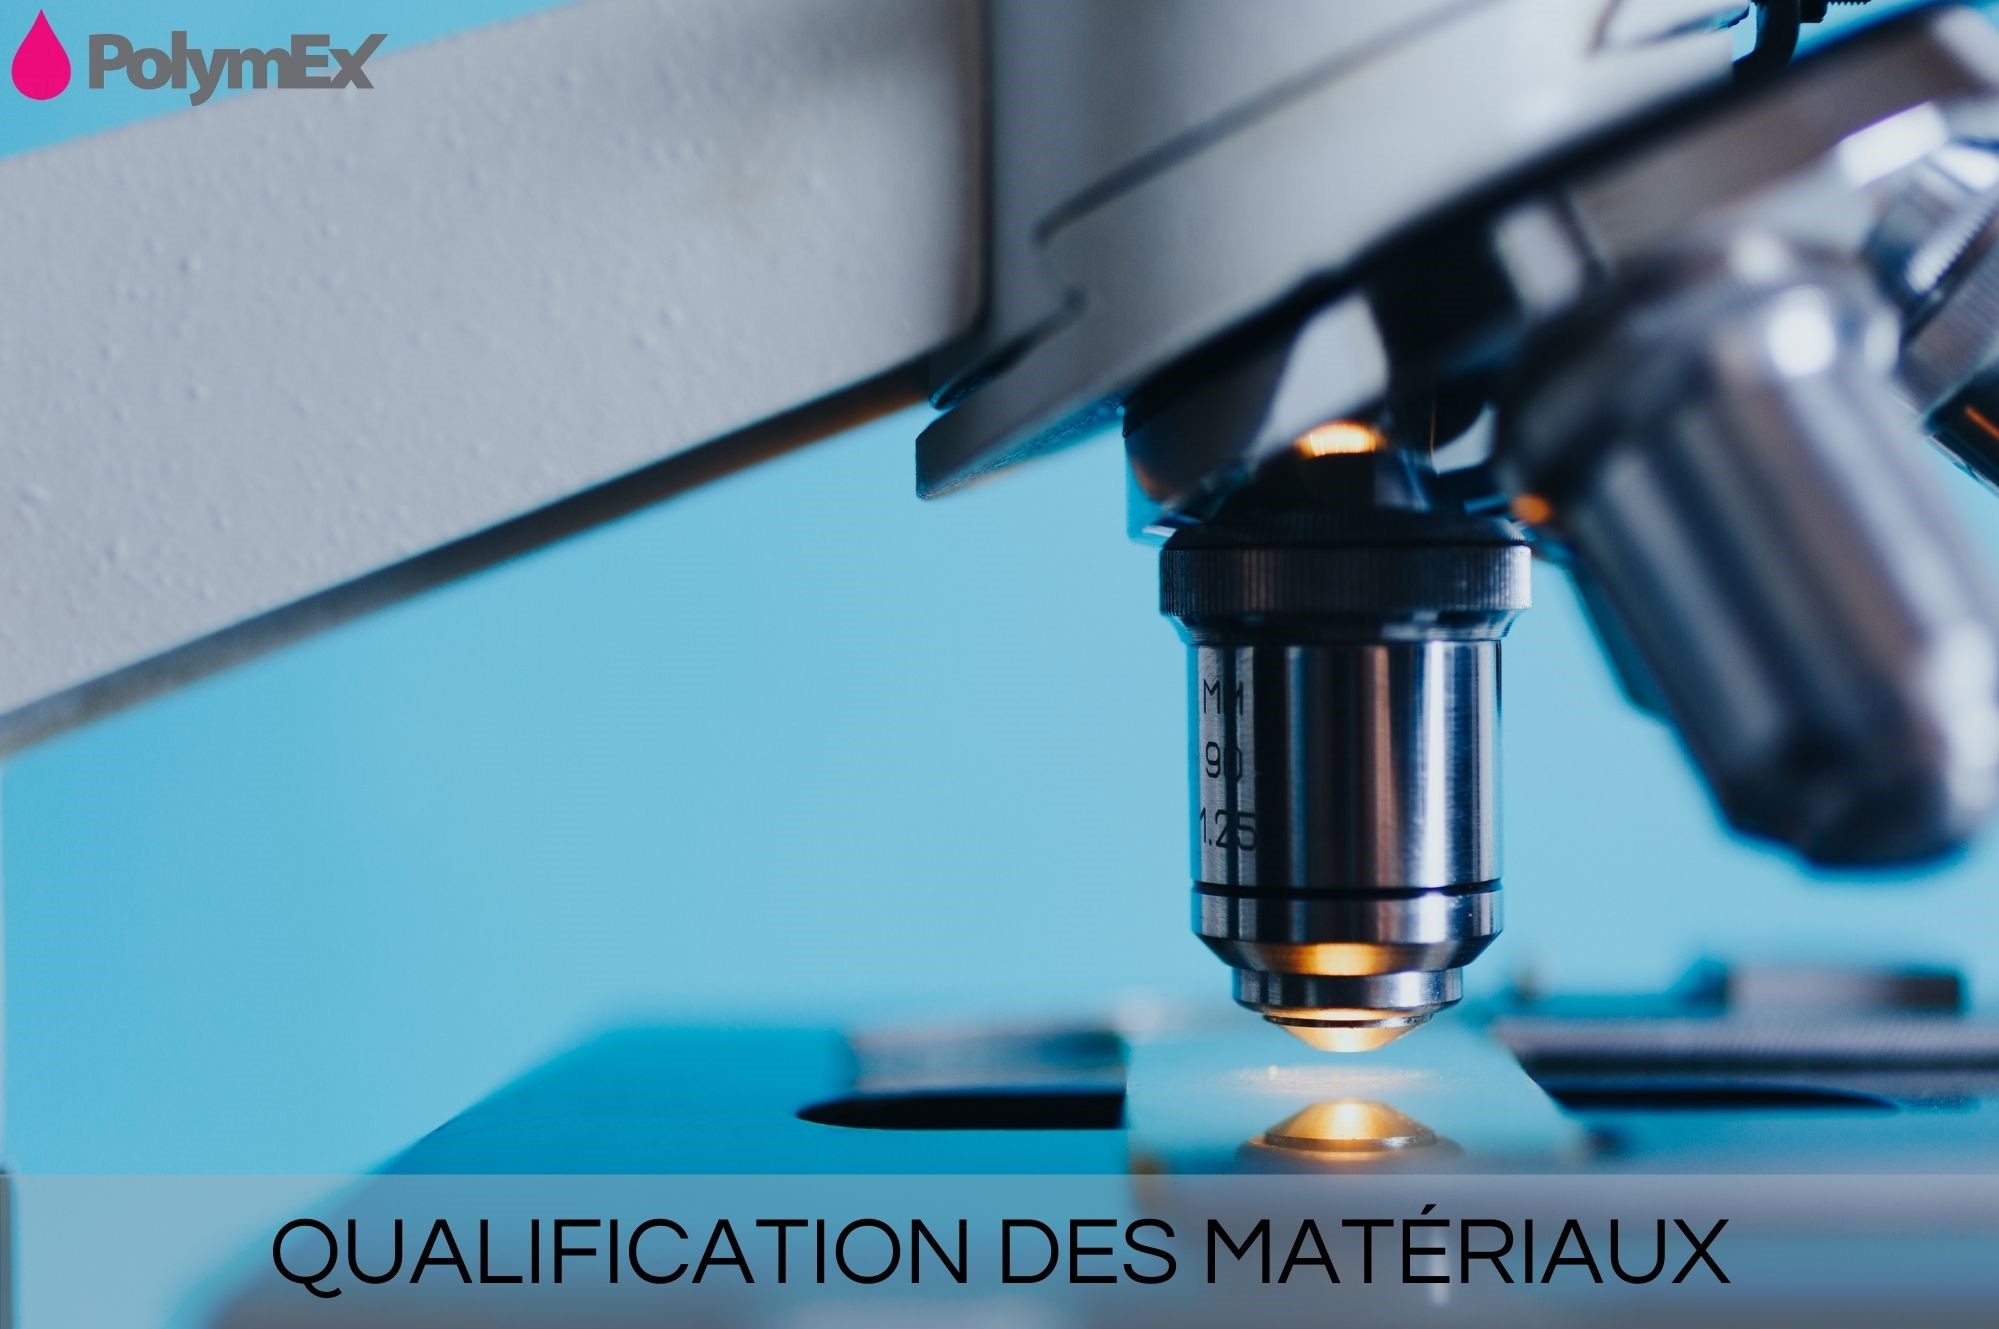 Qualification of materials